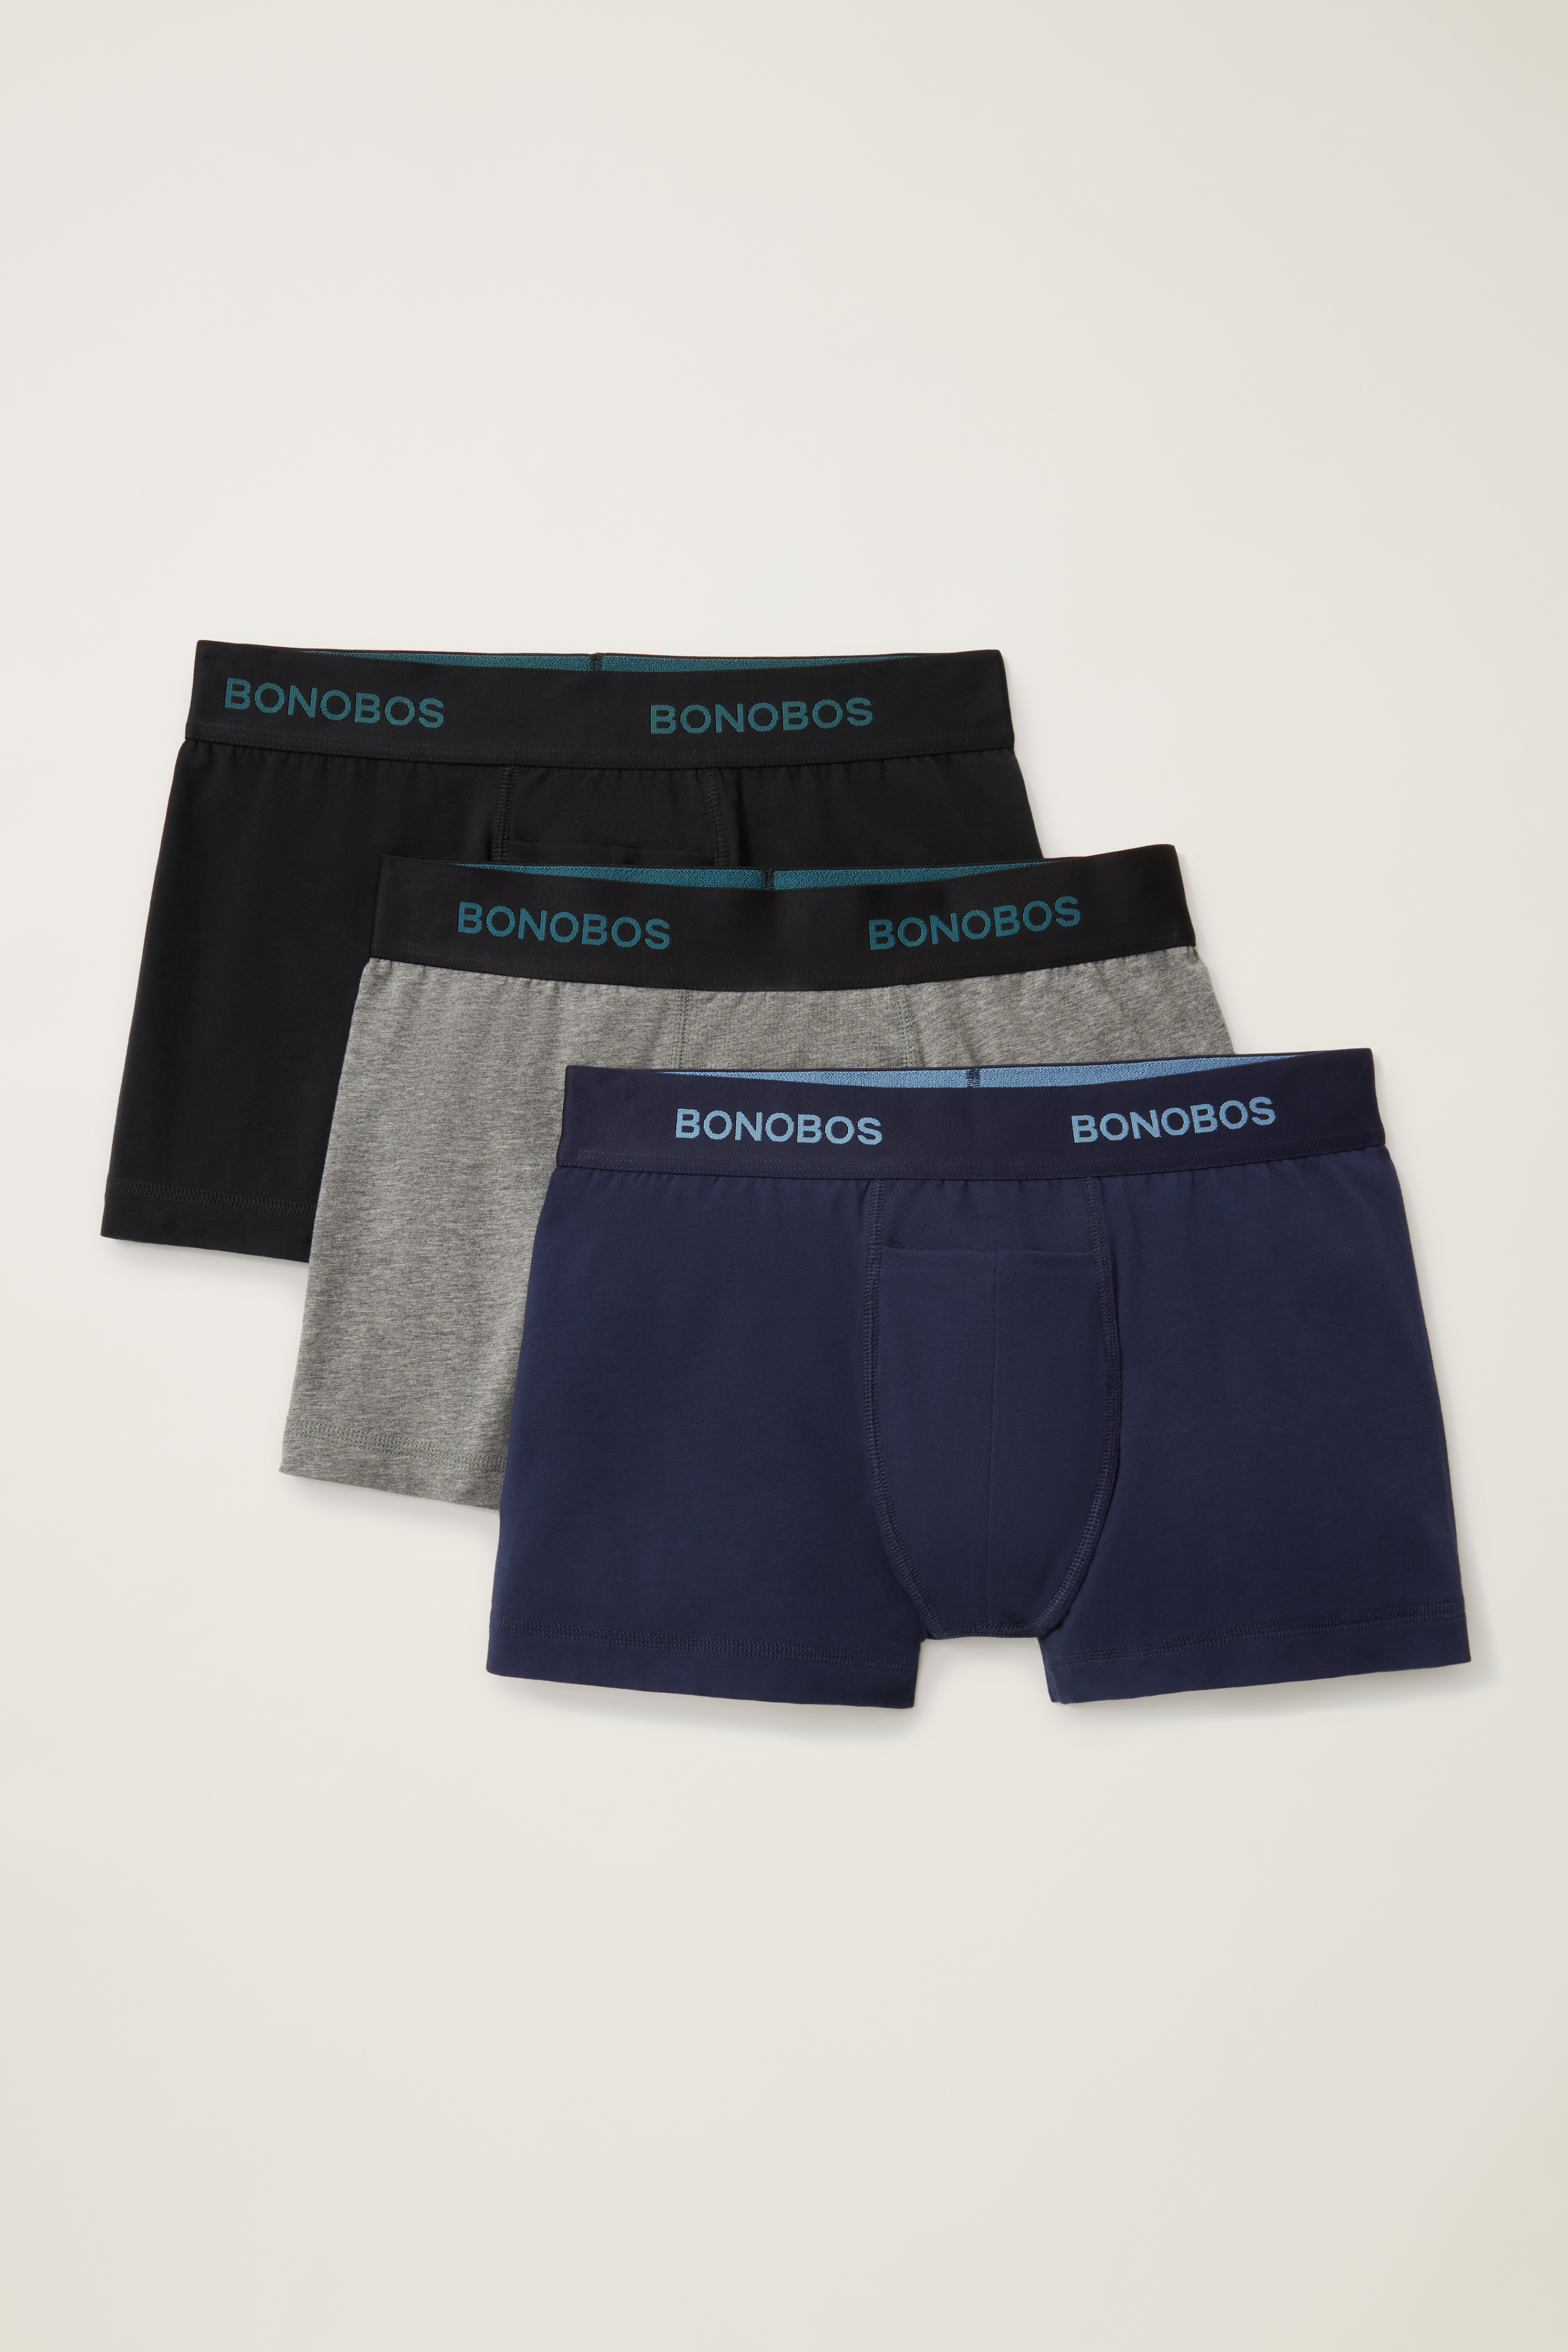 Supersoft Underwear 3-Pack: Bonobos Trunks & Boxer Briefs